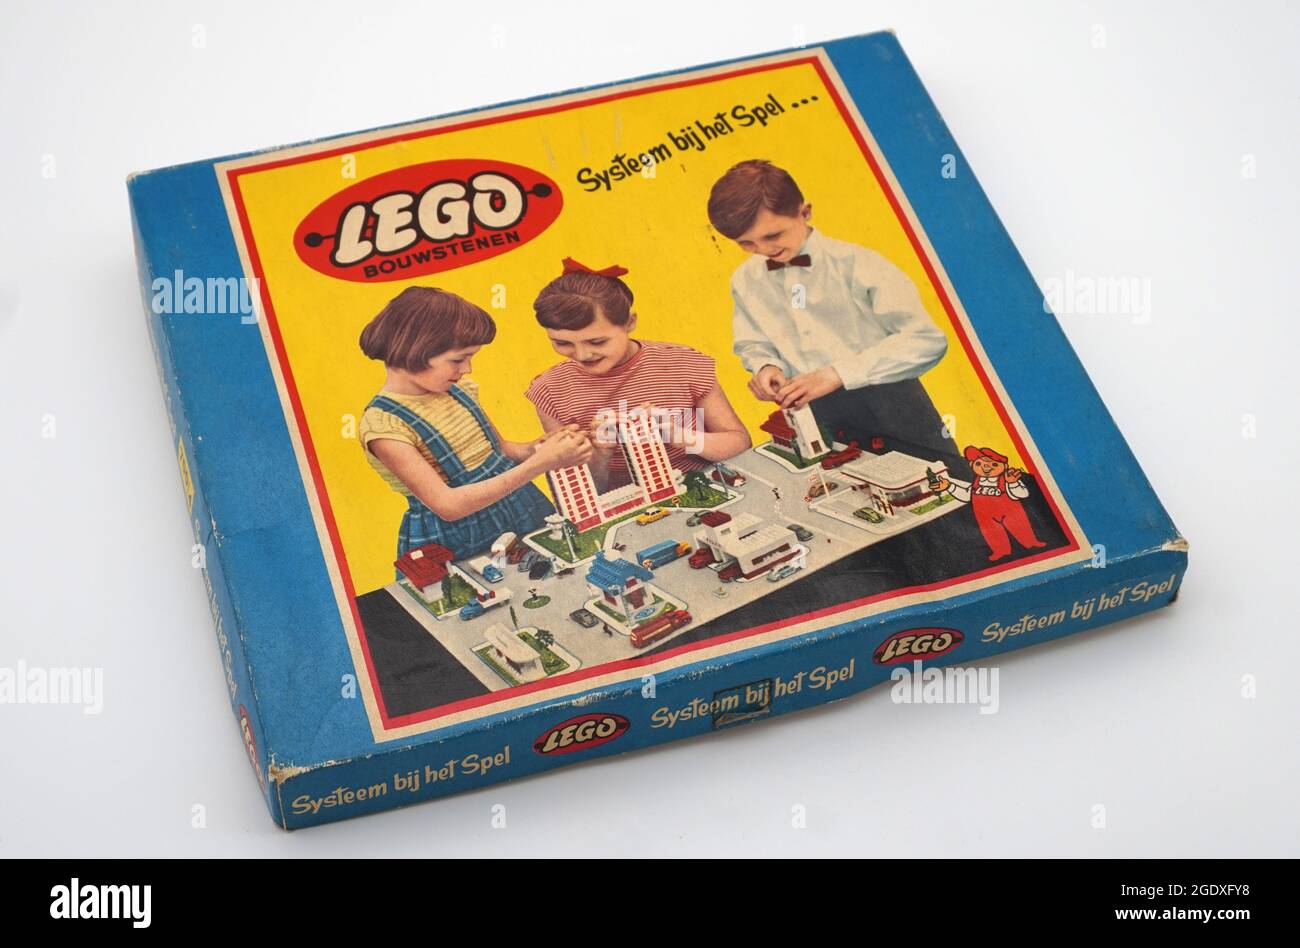 Ladrillos de construcción LEGO. Diseño de la primera caja de 1958,  exclusivo de Holanda. Juego de cajas de Lego Temprano. Lanzado en 1953 como  Lego, el diseño fue reforzado en 1958 con